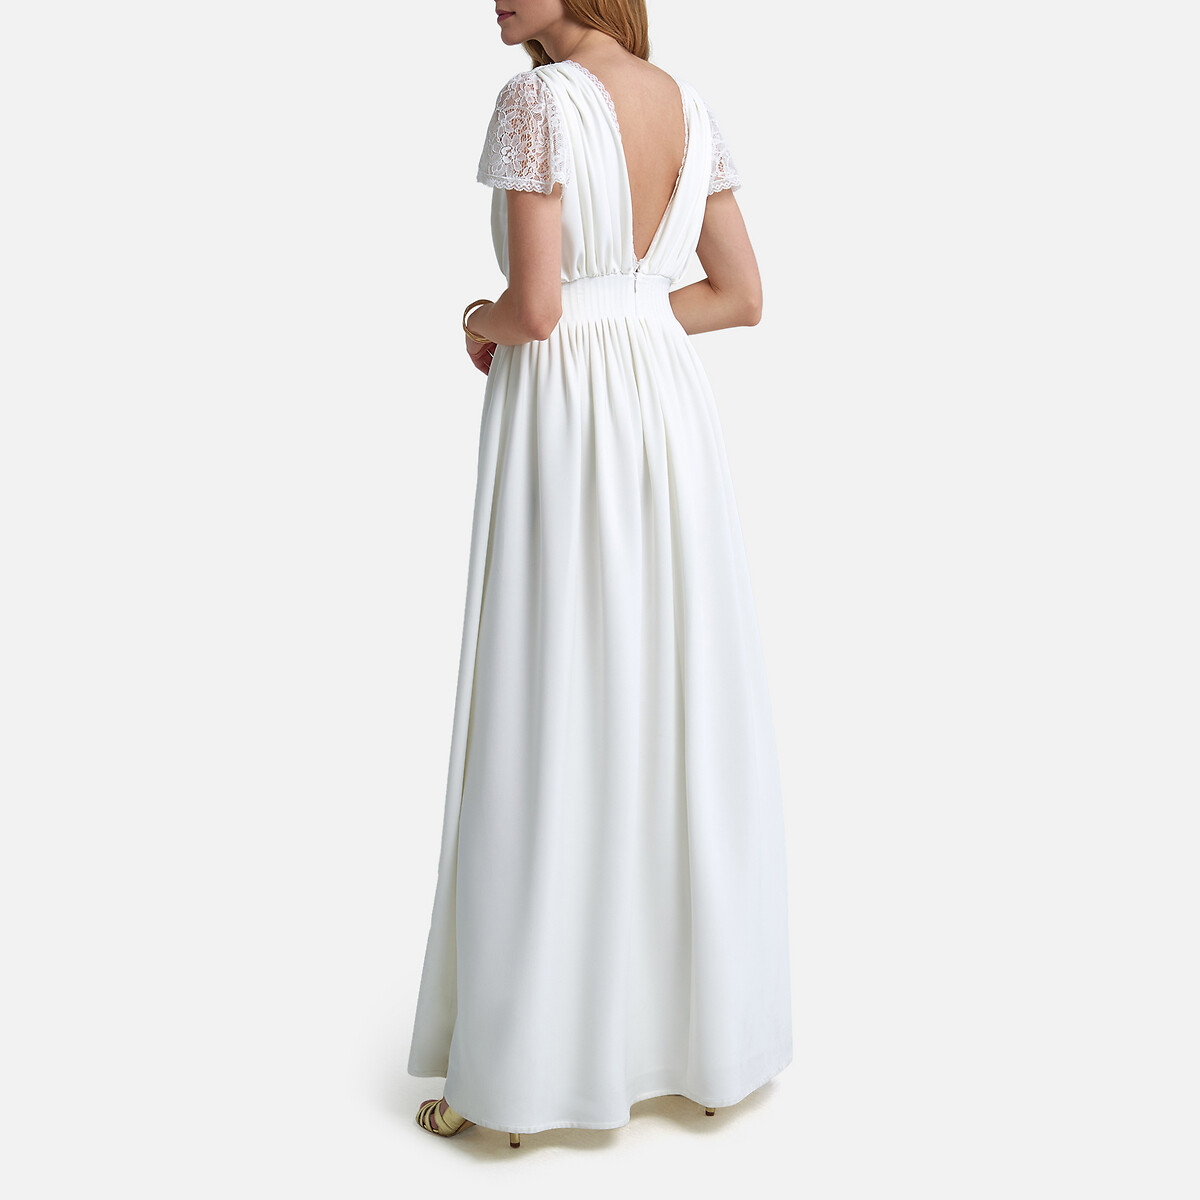 Платье La Redoute Невесты длинное короткие кружевные рукава 44 (FR) - 50 (RUS) белый, размер 44 (FR) - 50 (RUS) Невесты длинное короткие кружевные рукава 44 (FR) - 50 (RUS) белый - фото 3